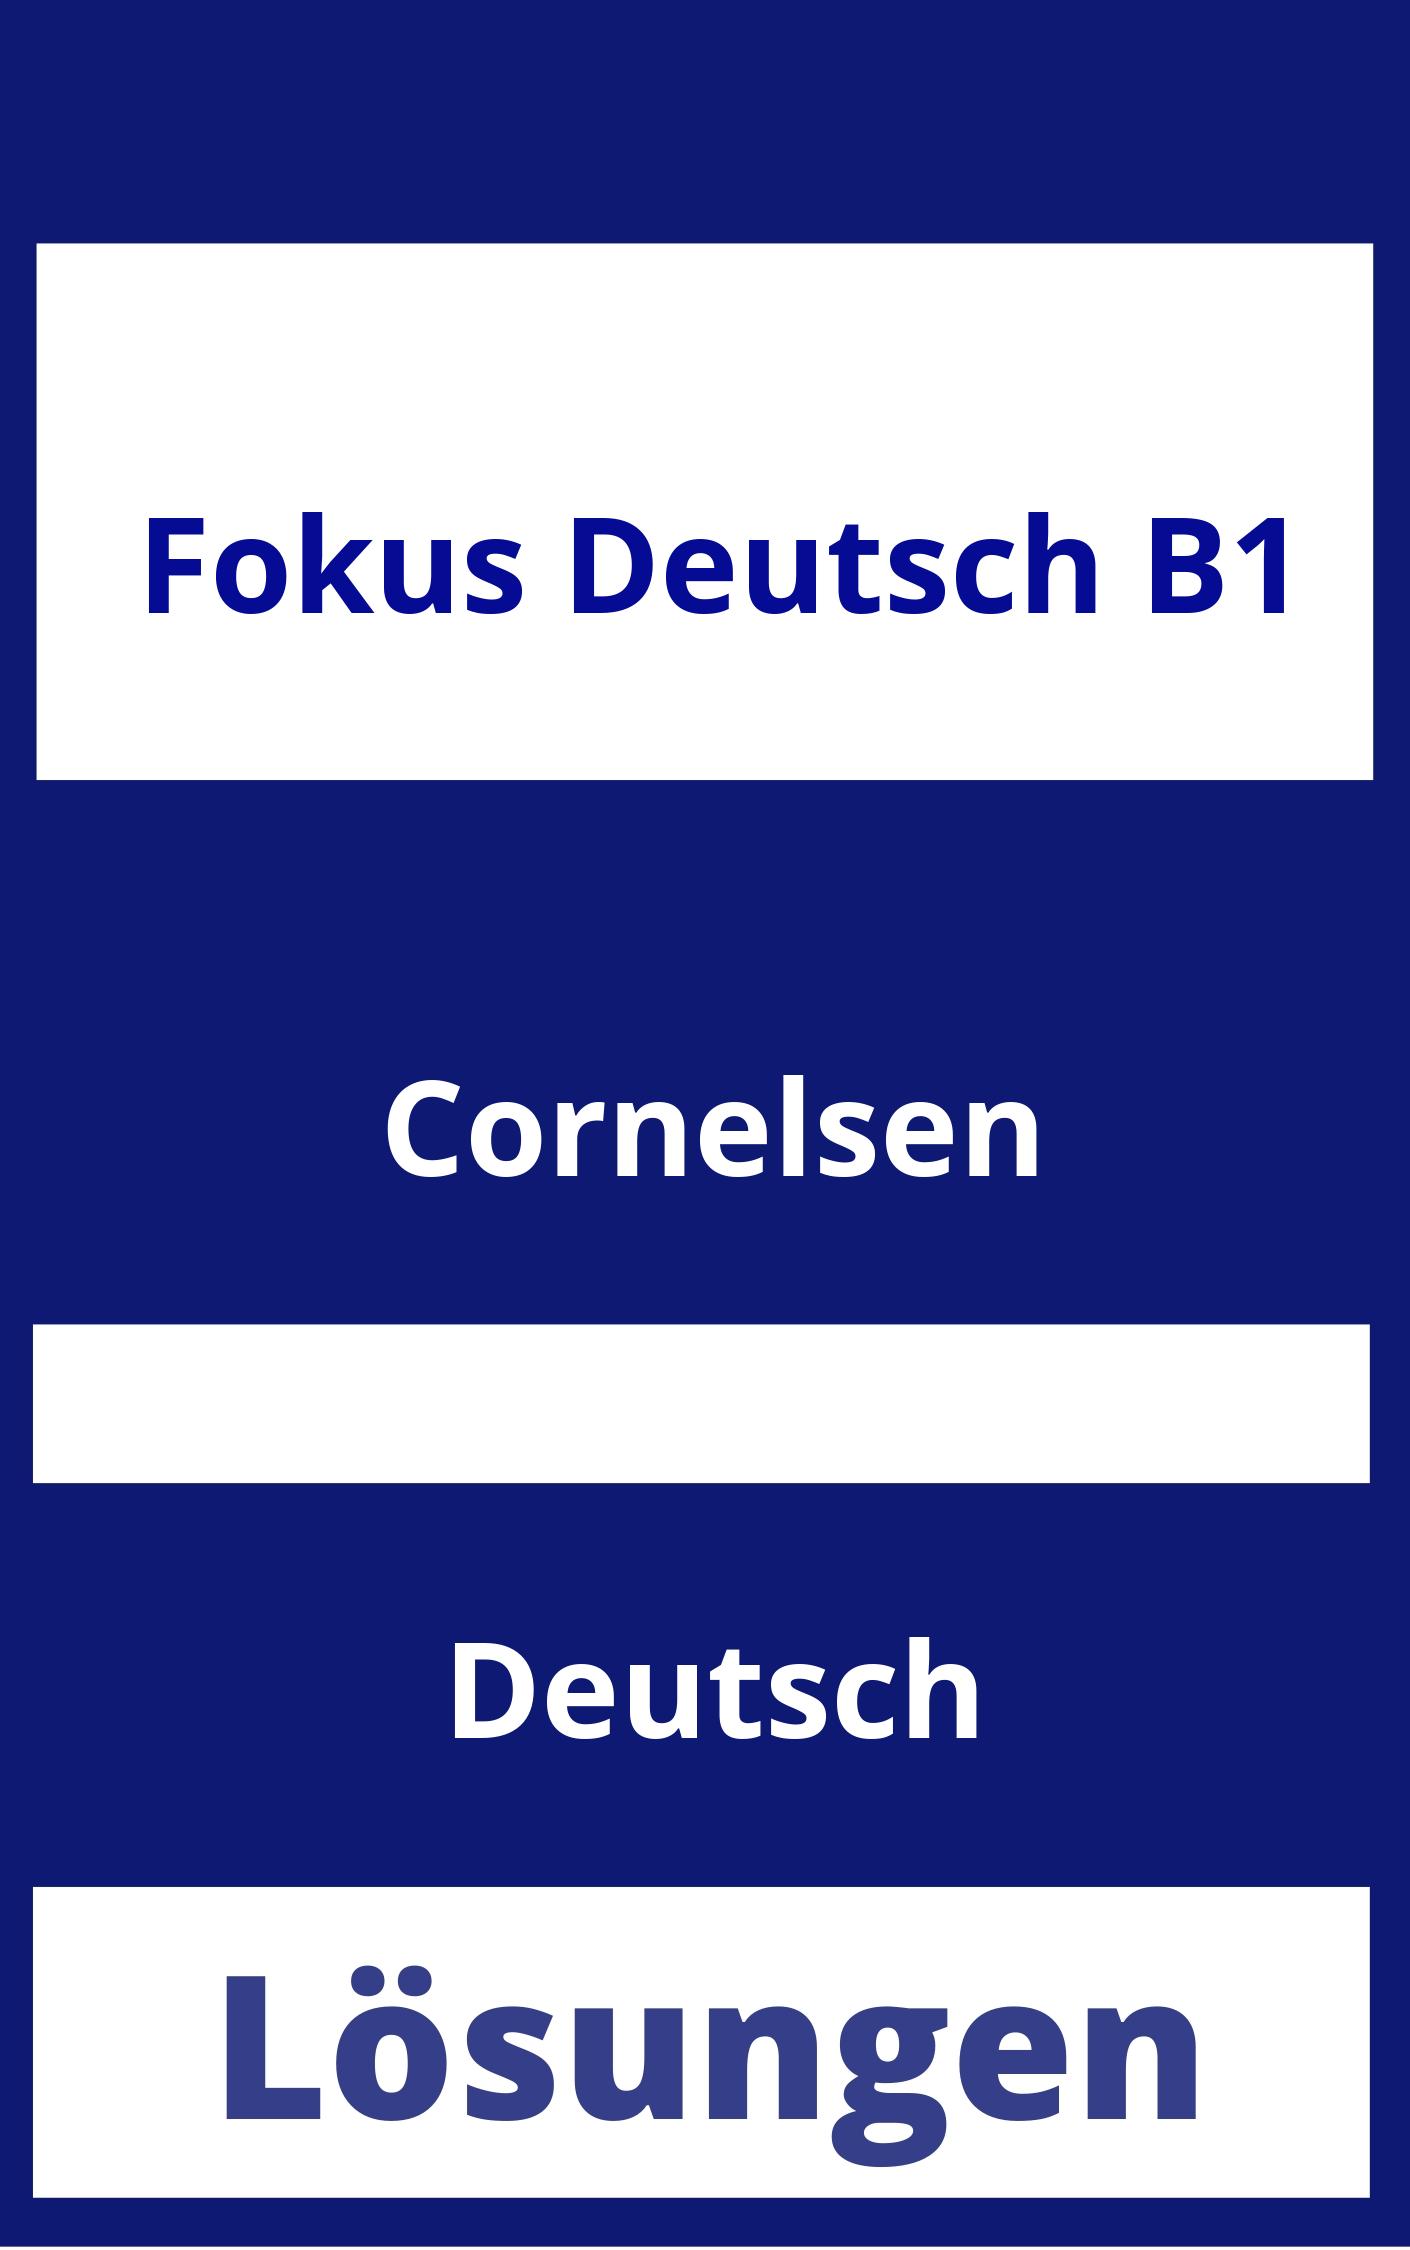 Fokus Deutsch B1 Lösungen PDF